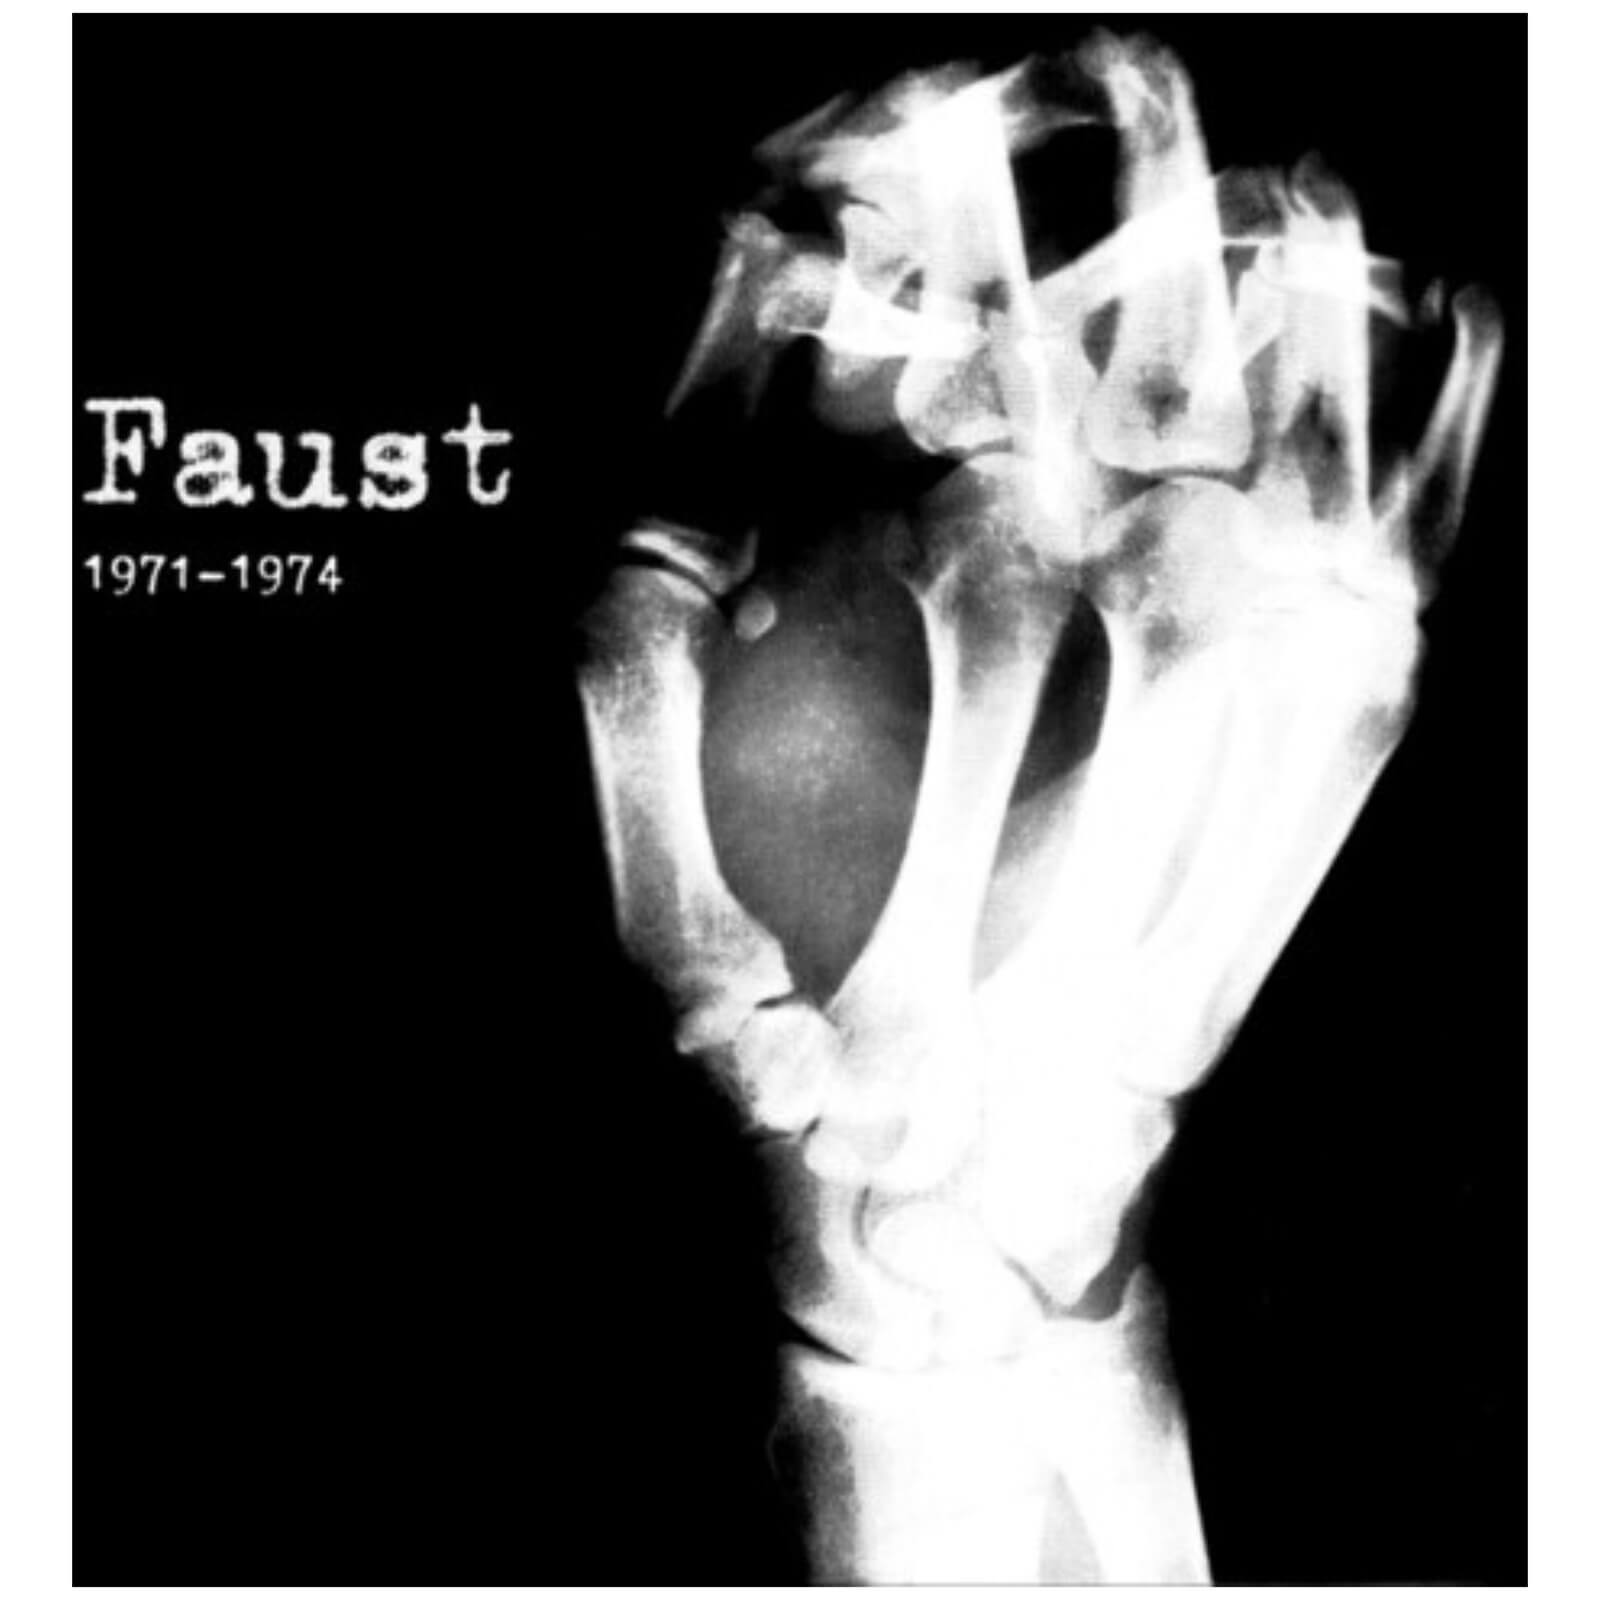 Faust - 1971-1974 7xLP Box Set